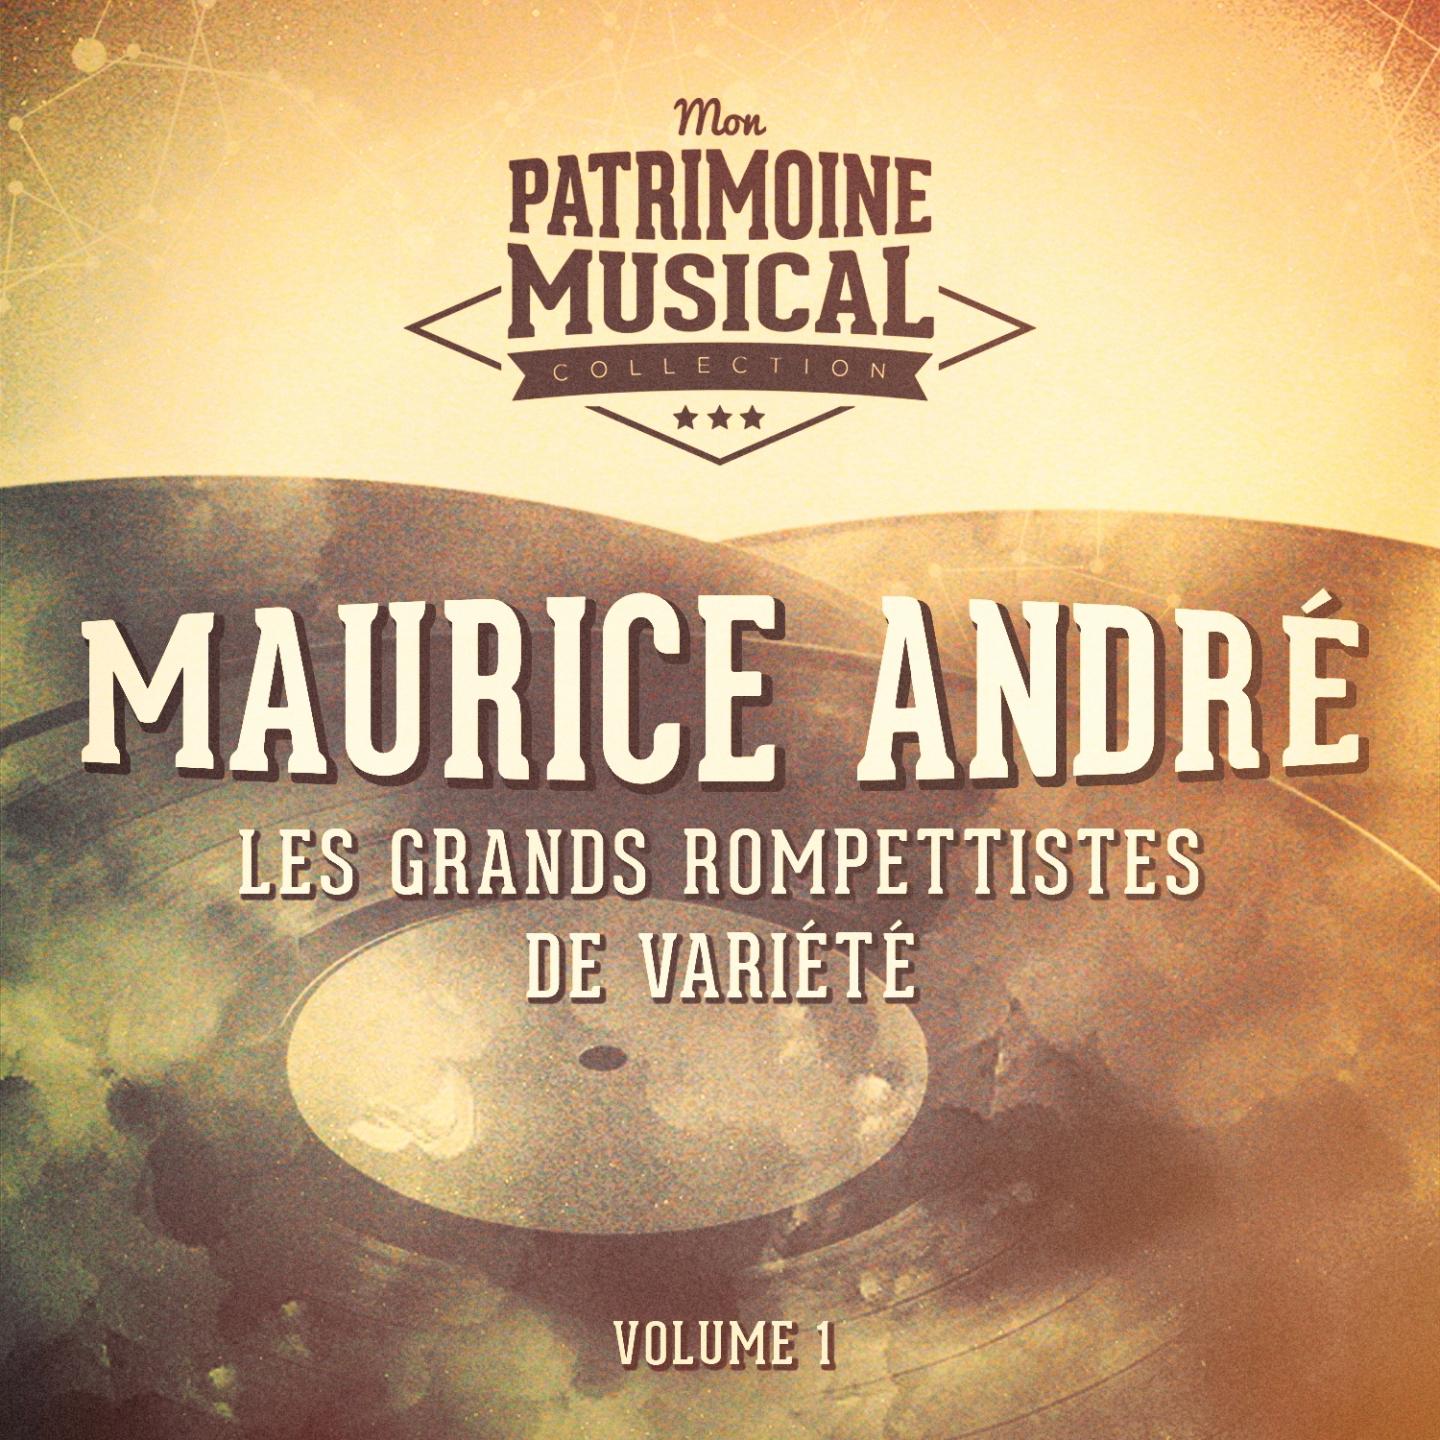 Les grands trompettistes de varie te : Maurice Andre, Vol. 1